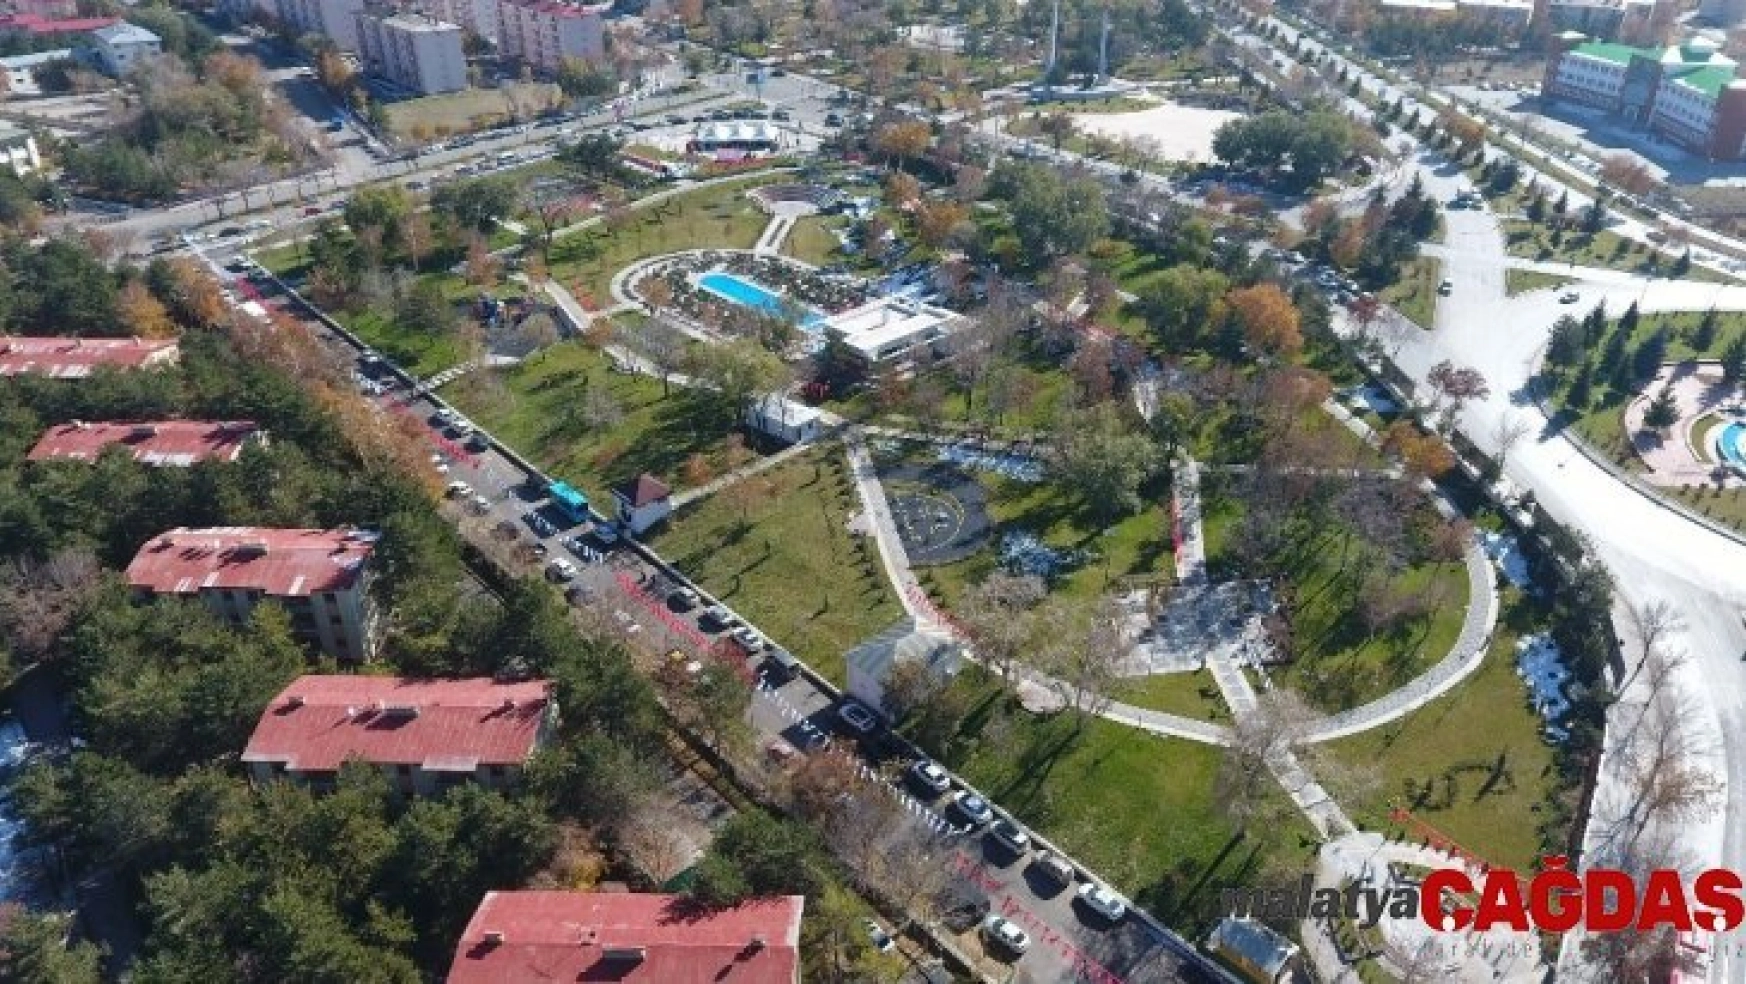 Erzurum'a yeni bir yeşil alan daha: 100. Yıl Millet Bahçesi açıldı